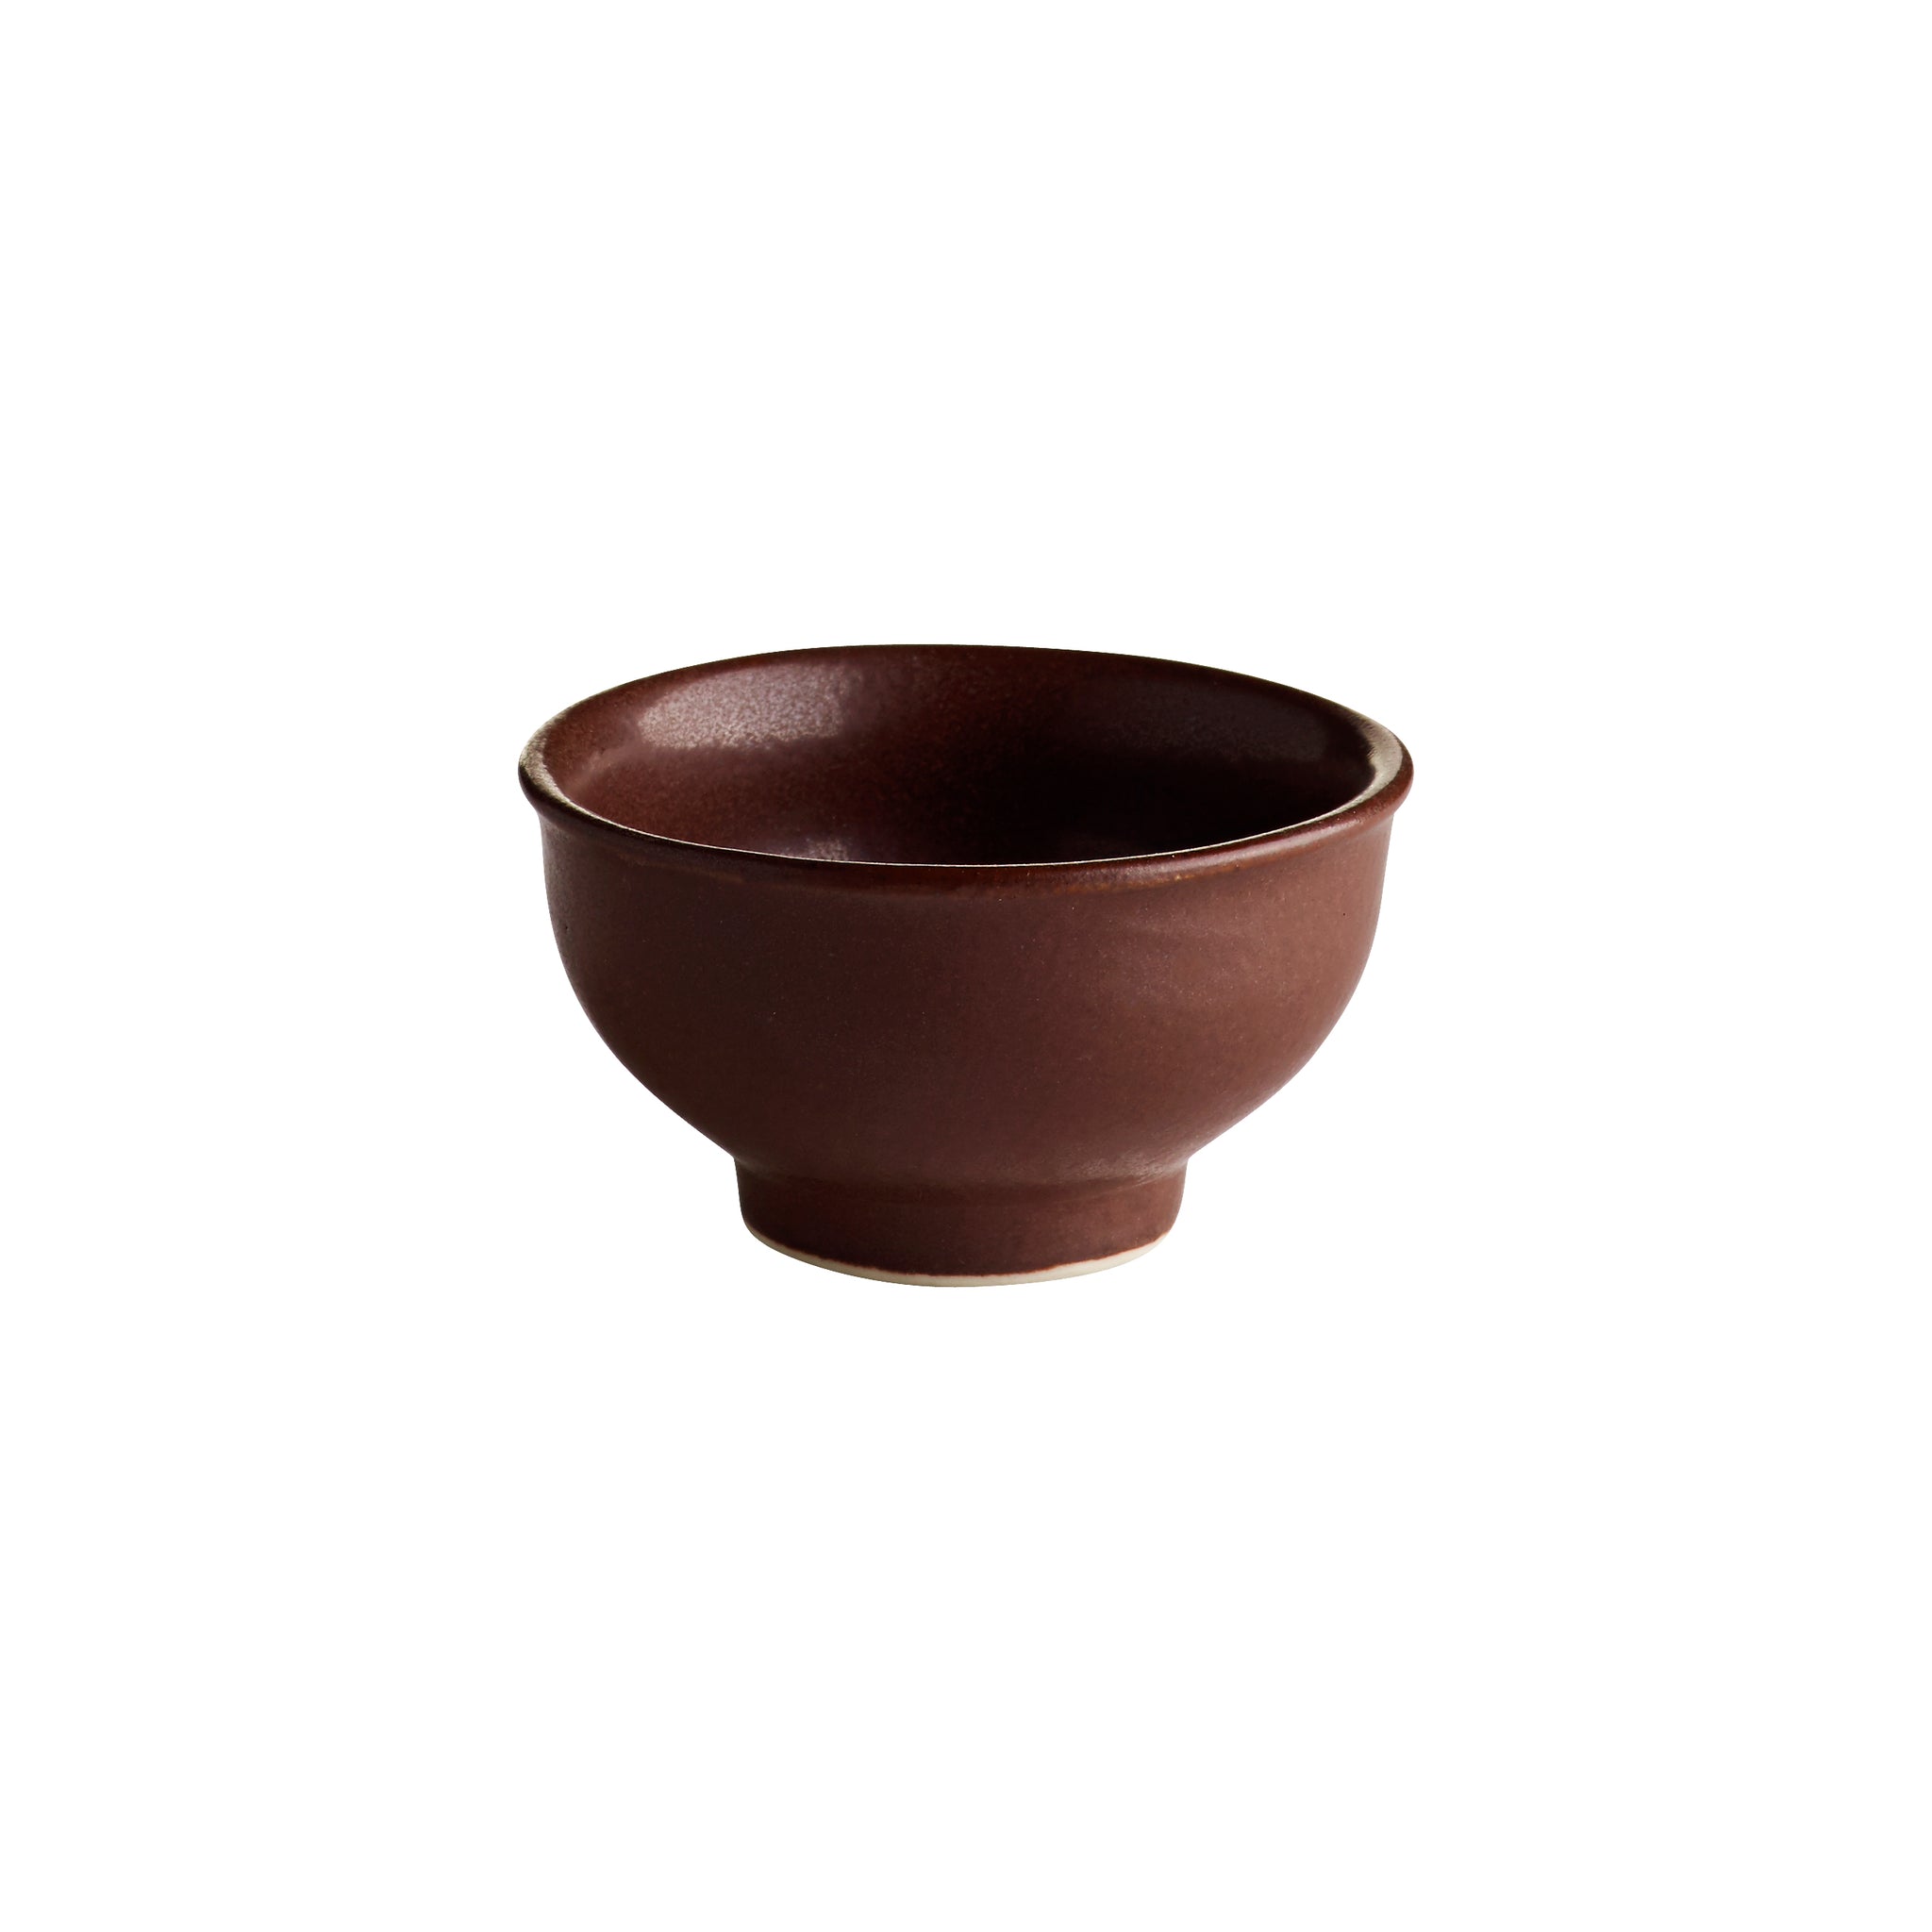 Tine K Home handmade ceramic Bowl small toffee kleine Schale braun brown Schälchen Keramik handgemacht 